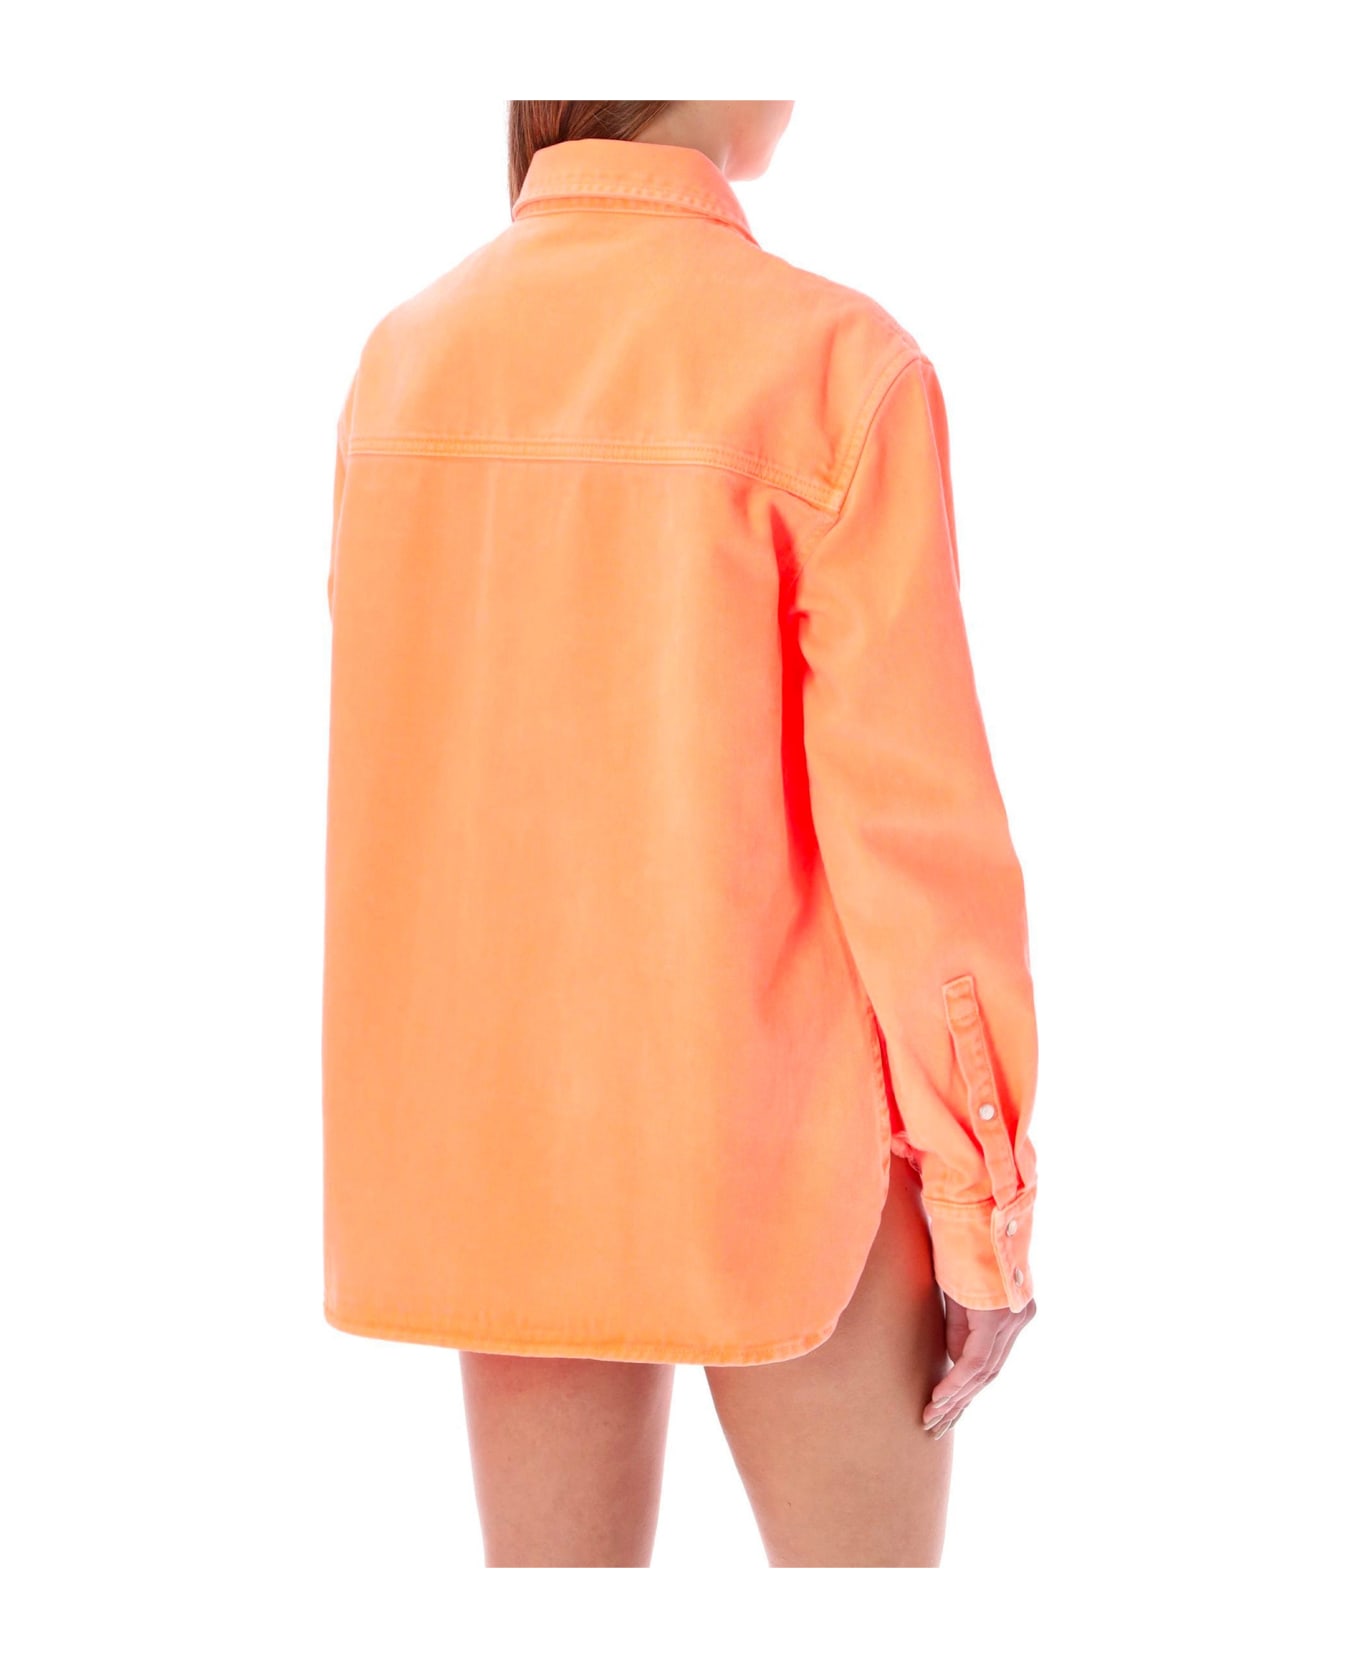 Palm Angels Cotton Denim Shirt - Orange